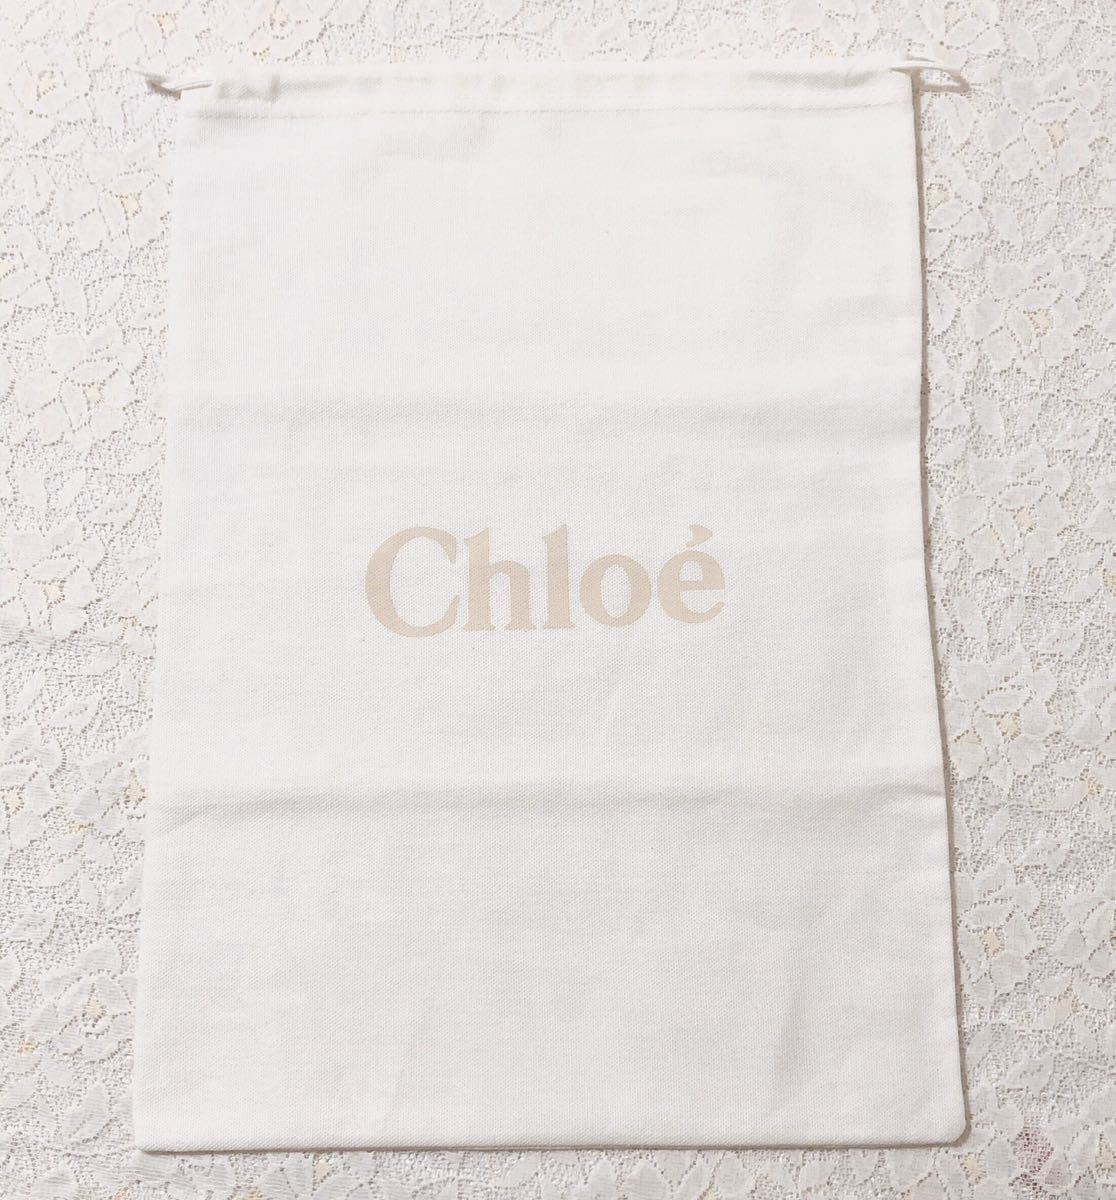 クロエ「Chloe」シューズ保存袋 2枚組（2900）正規品 付属品 内袋 布袋 巾着袋 31×44cm 布製 ホワイト_画像2